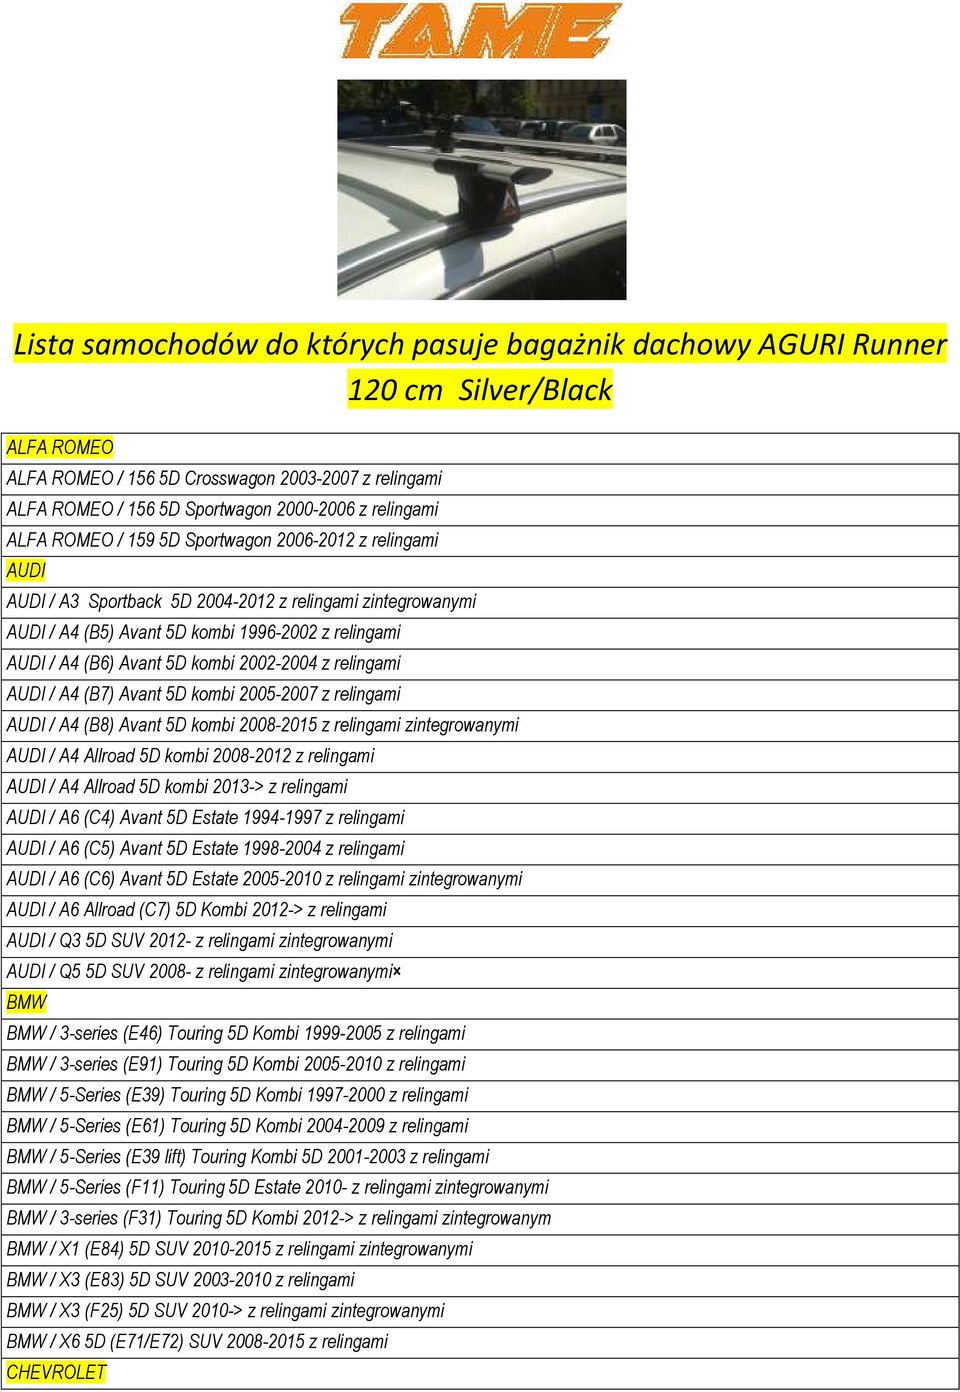 Avant 5D kombi 2002-2004 z relingami AUDI / A4 (B7) Avant 5D kombi 2005-2007 z relingami AUDI / A4 (B8) Avant 5D kombi 2008-2015 z relingami zintegrowanymi AUDI / A4 Allroad 5D kombi 2008-2012 z